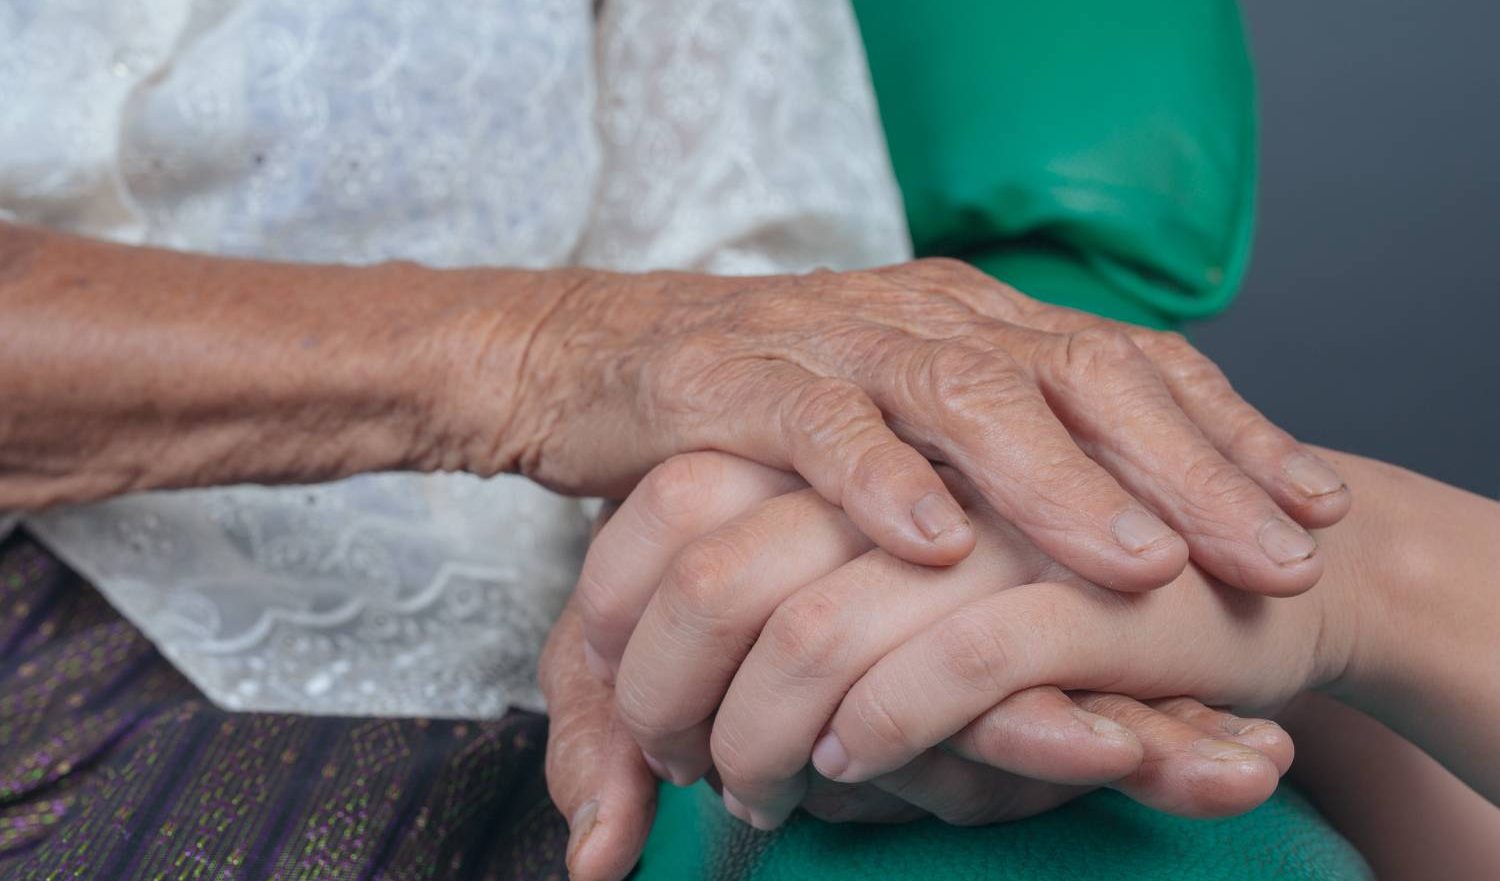 La demenza nel mondo rischia di triplicare  entro il 2050